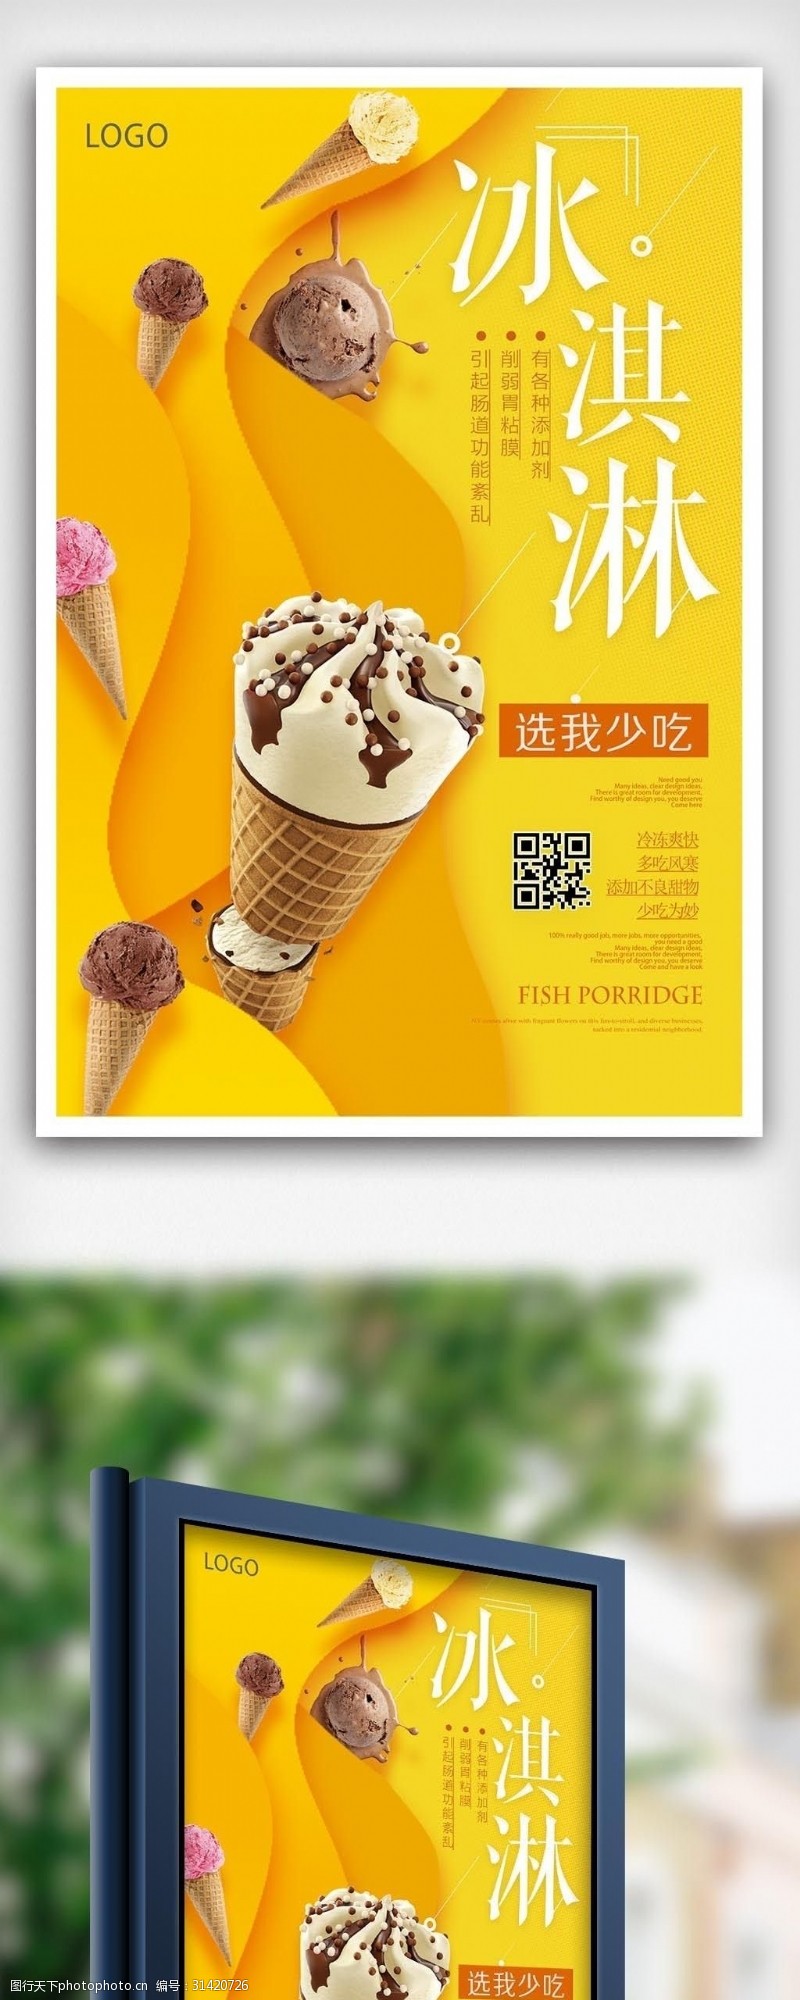 彩色水果冰棍冰淇淇夏季宣传海报